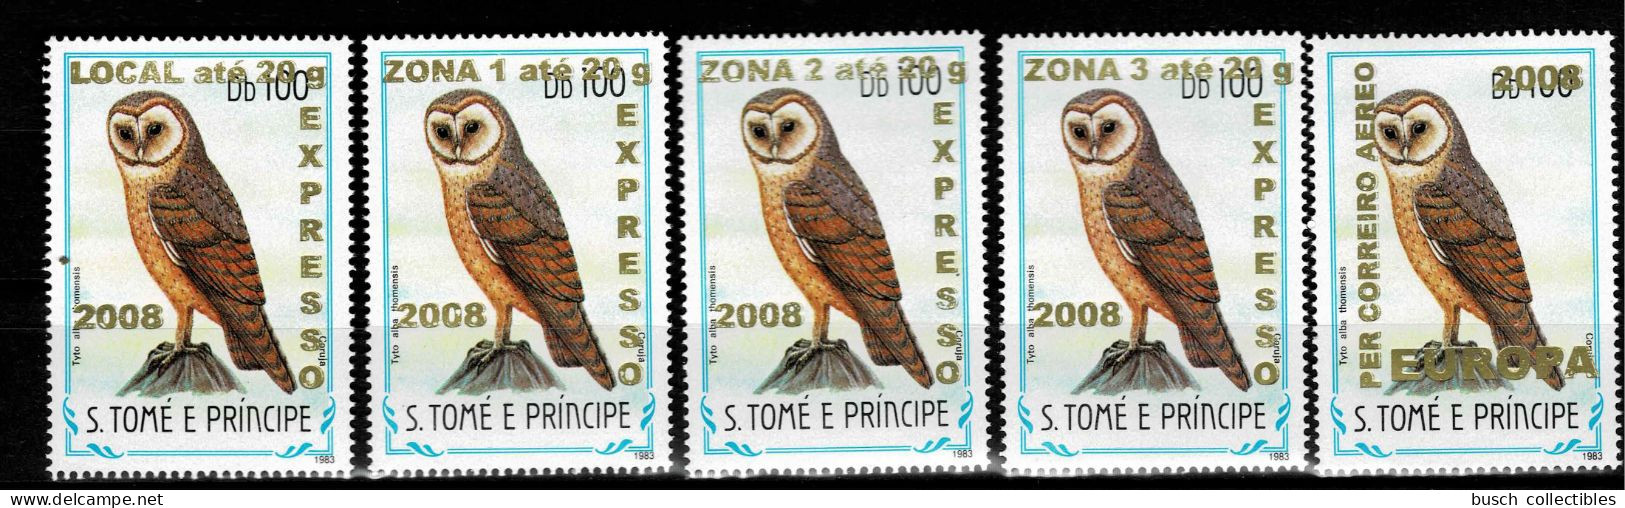 S. Tomé & Principe 2009 Mi. 3963 - 3966 + 3968 Oiseaux Birds Vögel Chouette Eule Owl Faune Fauna Overprint Surcharge 5v. - Hiboux & Chouettes